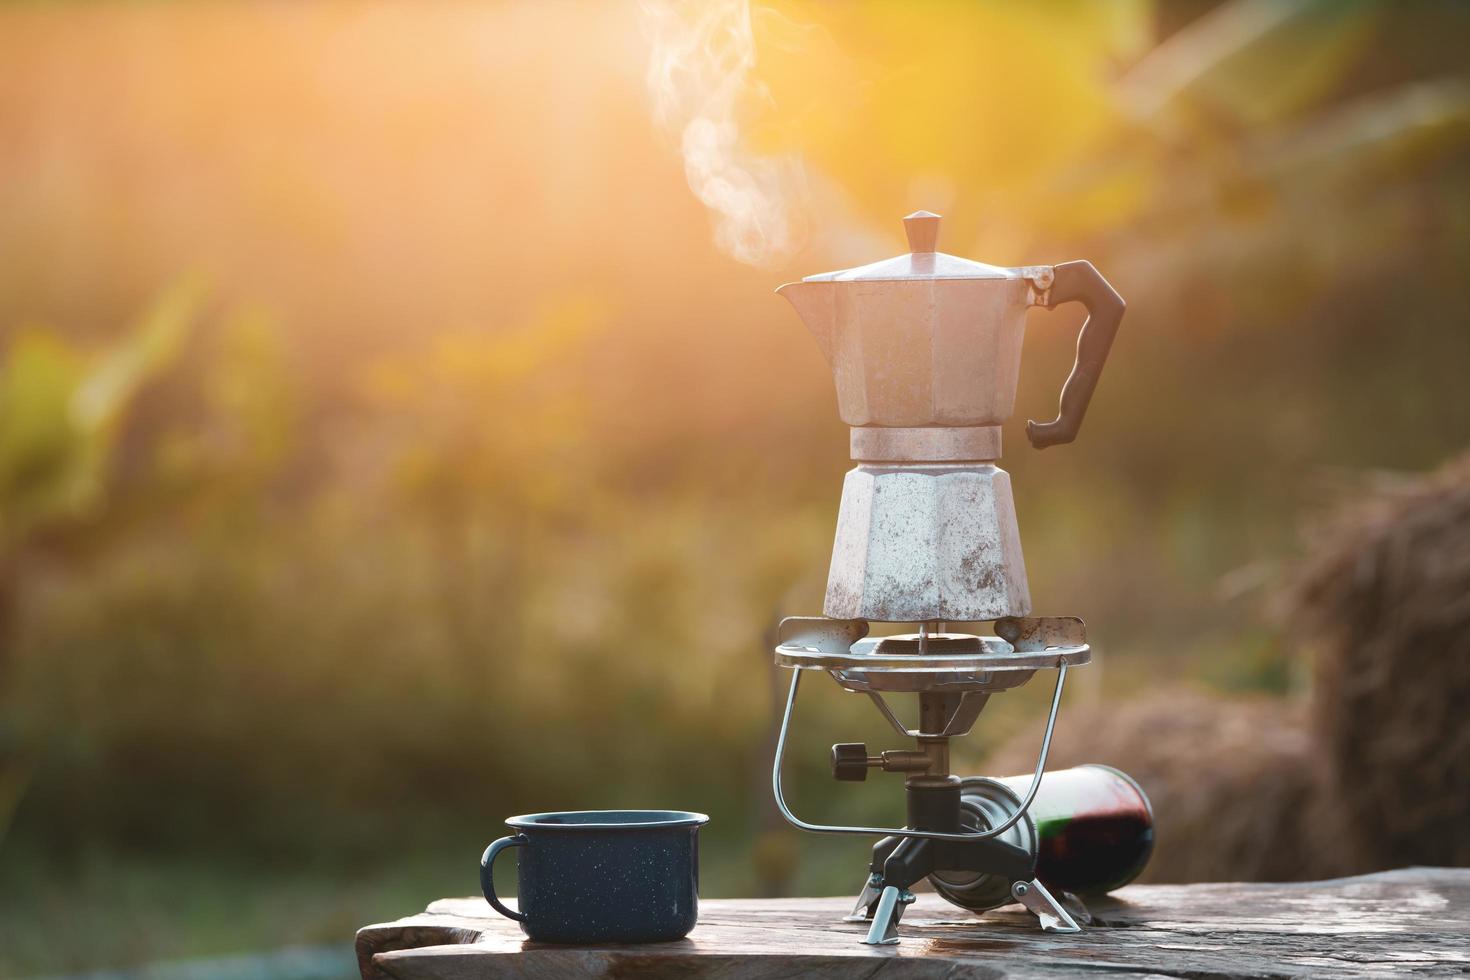 cafetière antique sur la cuisinière à gaz pour le camping quand le soleil se lève le matin.soft focus. photo